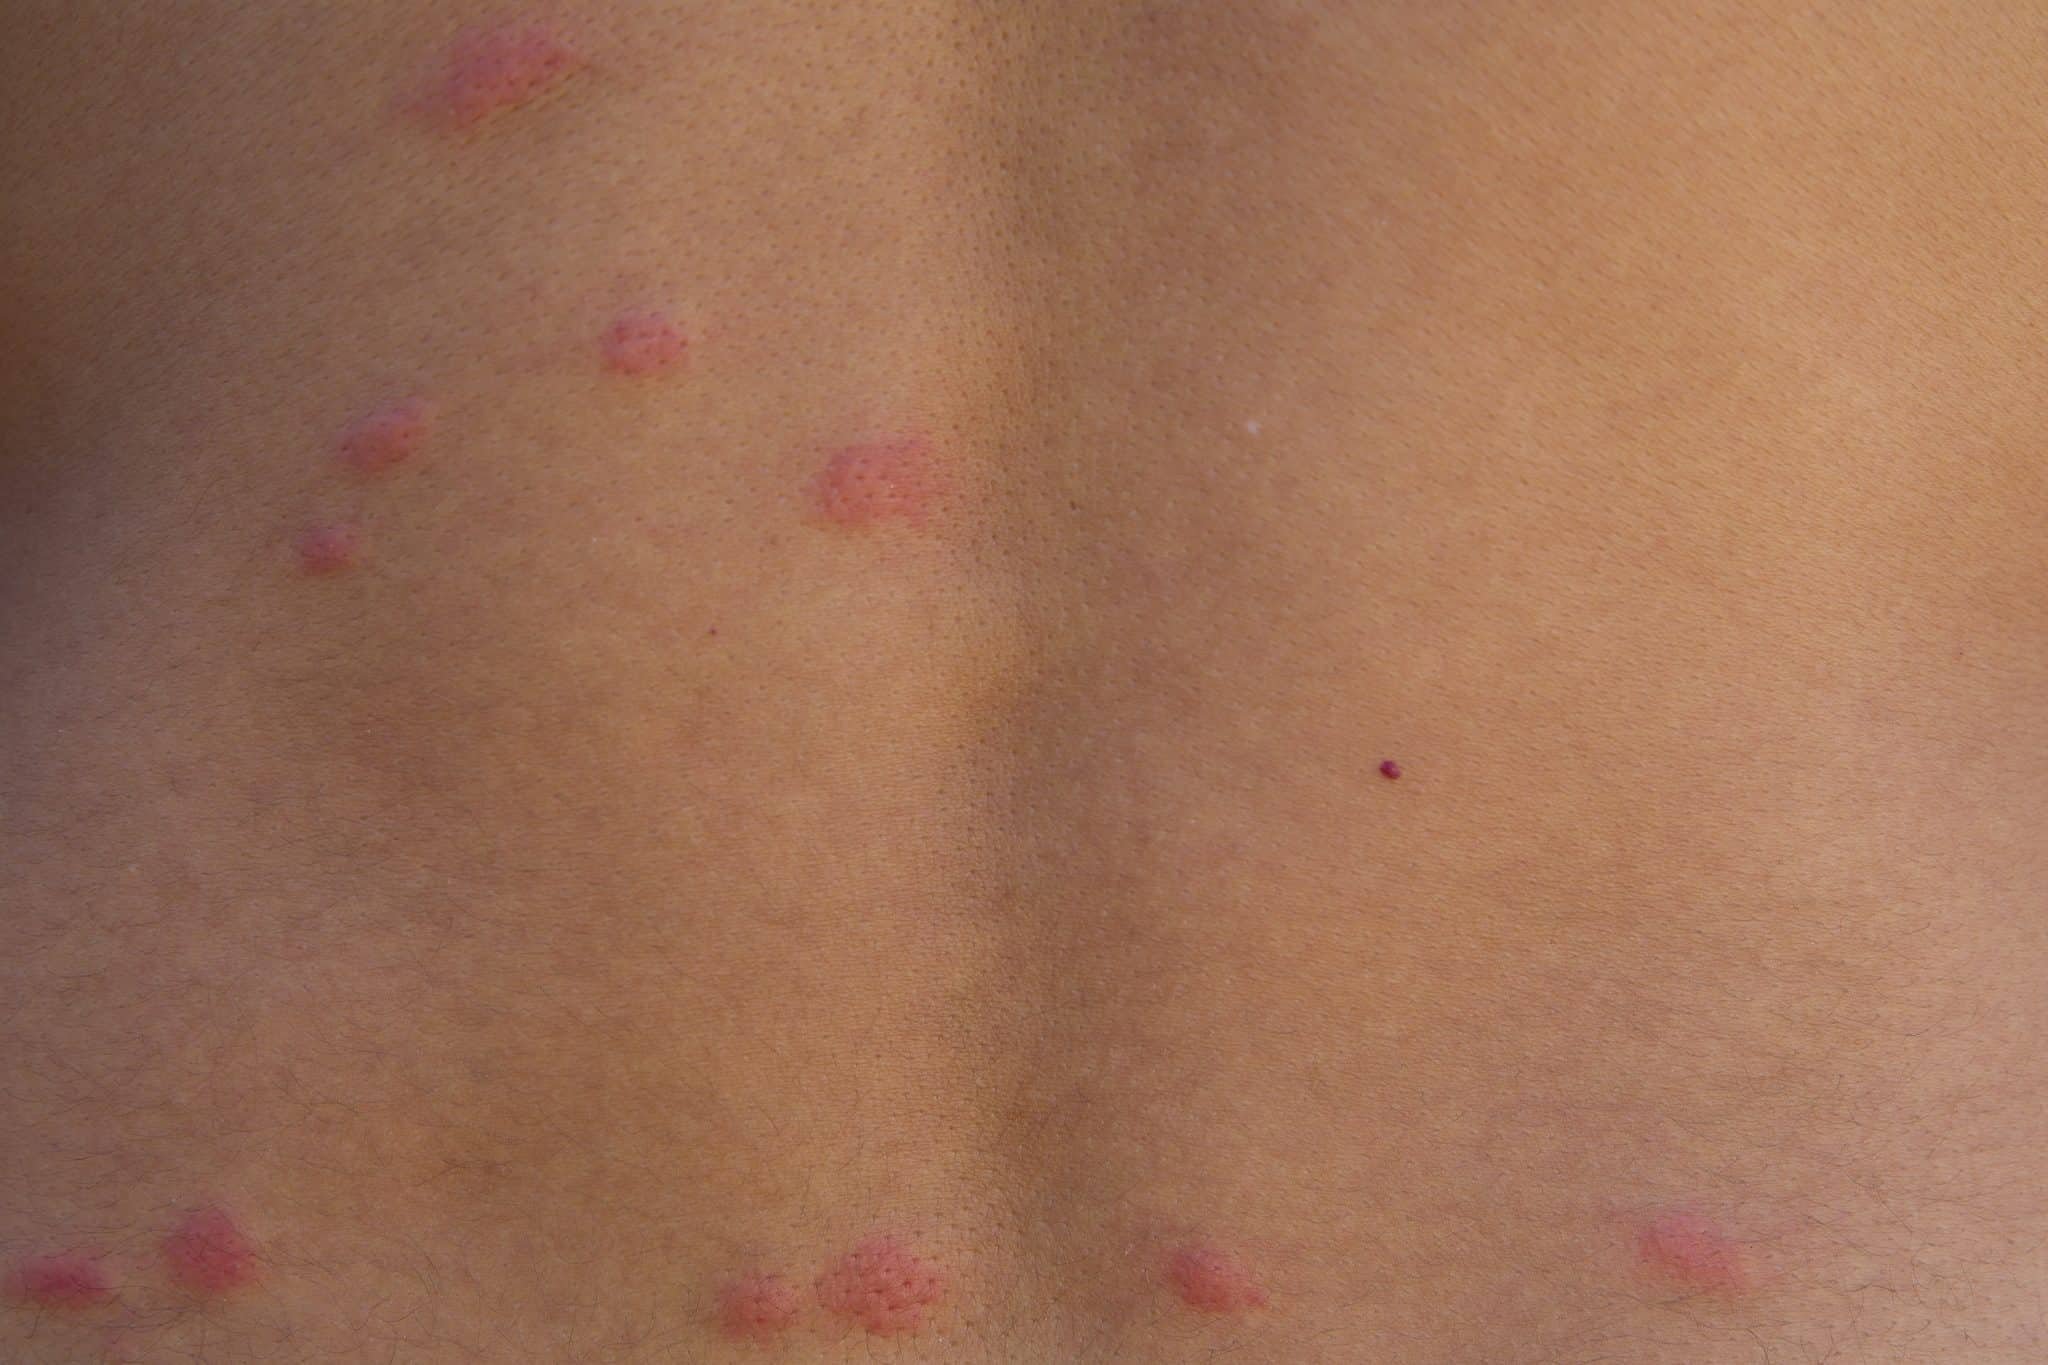 flea bites on skin